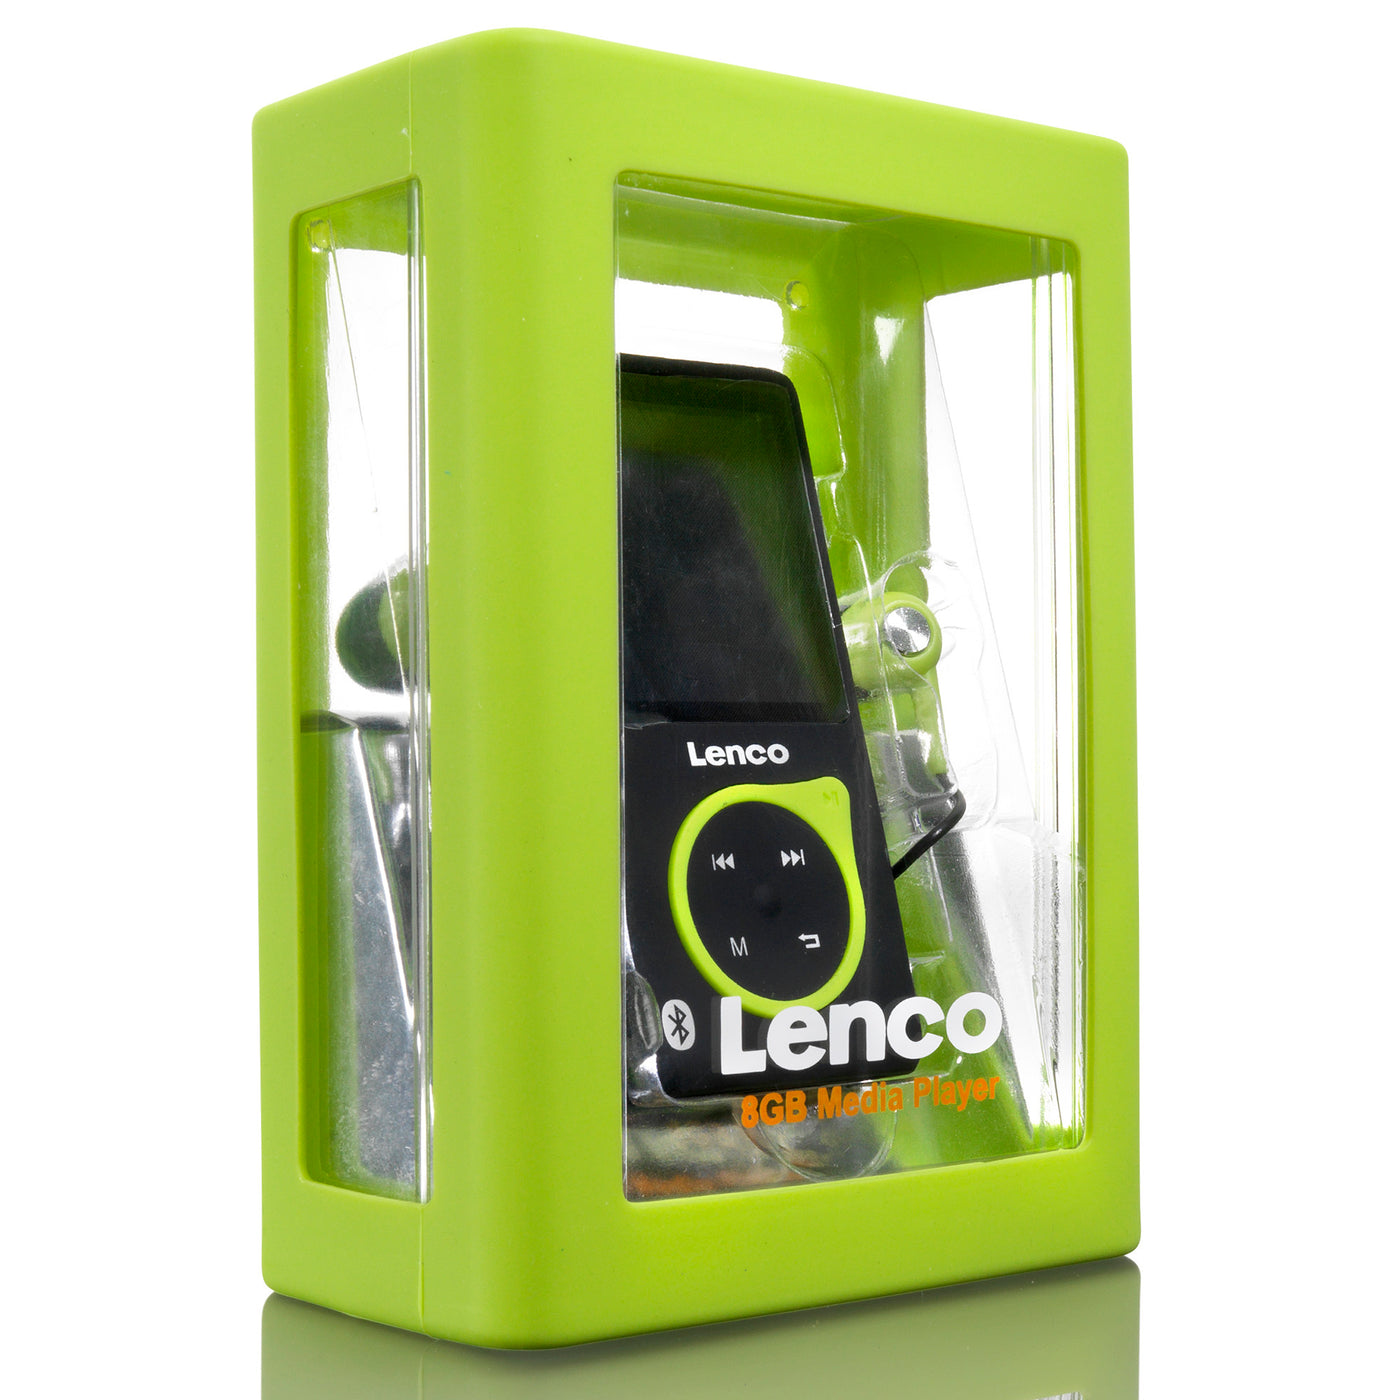 LENCO XEMIO-768 Lime - odtwarzacz MP3/MP4 z Bluetooth® w zestawie. Karta micro SD 8 GB - Limonkowa